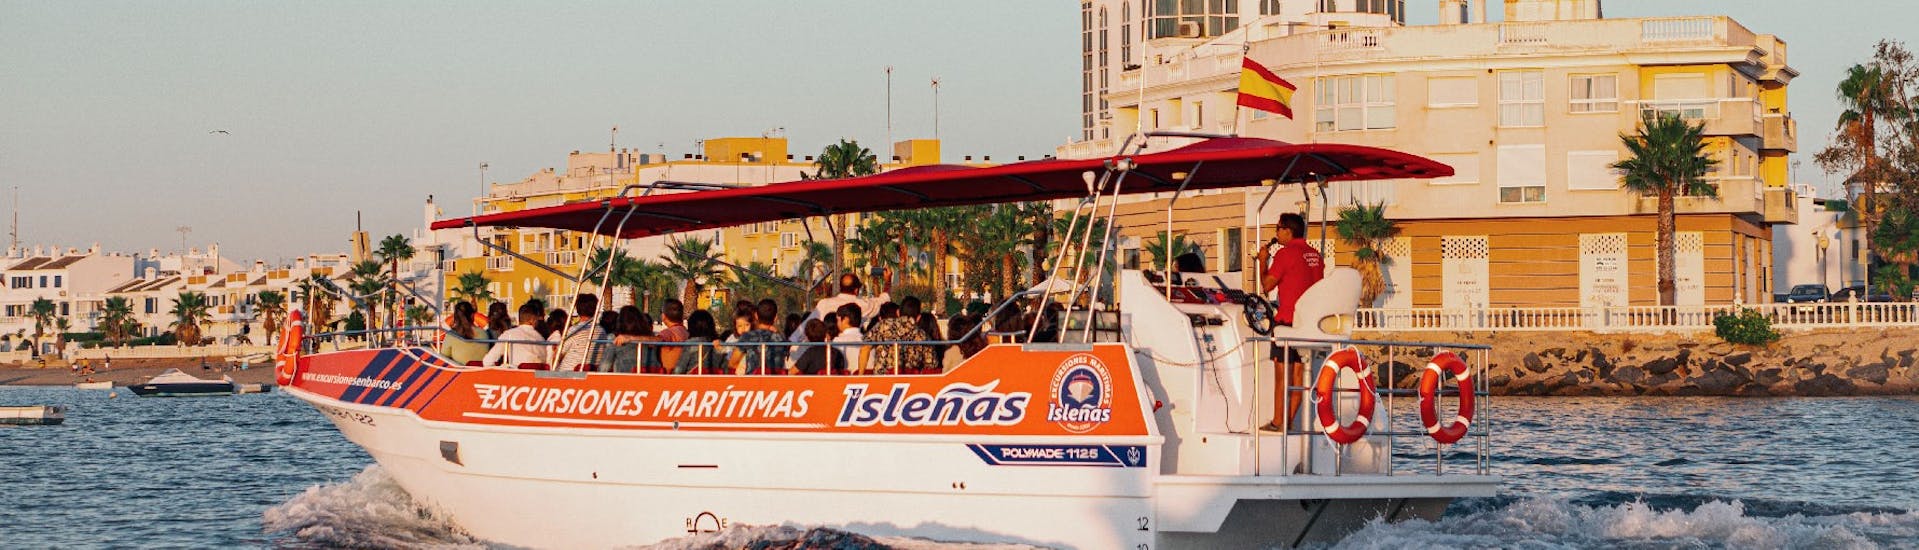 Balade en bateau le long des Marismas de Isla Cristina avec Excursiones Marítimas Isleñas Huelva.